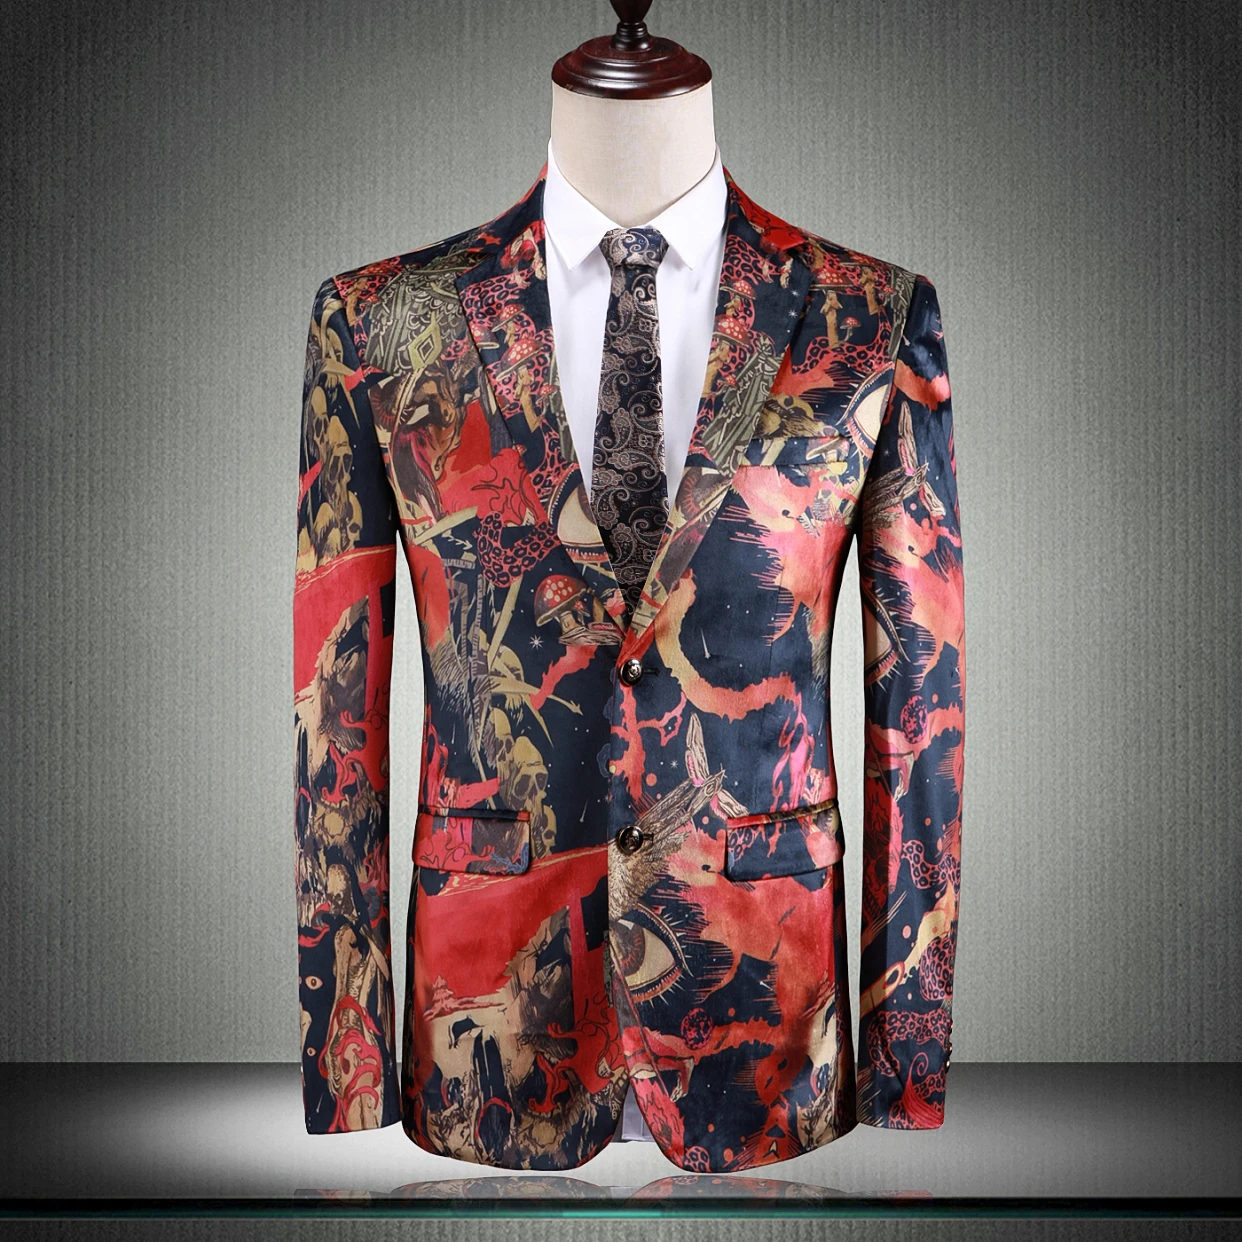 PAULKONTE 2019 новый принт тенденции моды блейзер Slim Повседневное вечерние развлечений костюм один кусок Высокое качество Роскошный пиджак